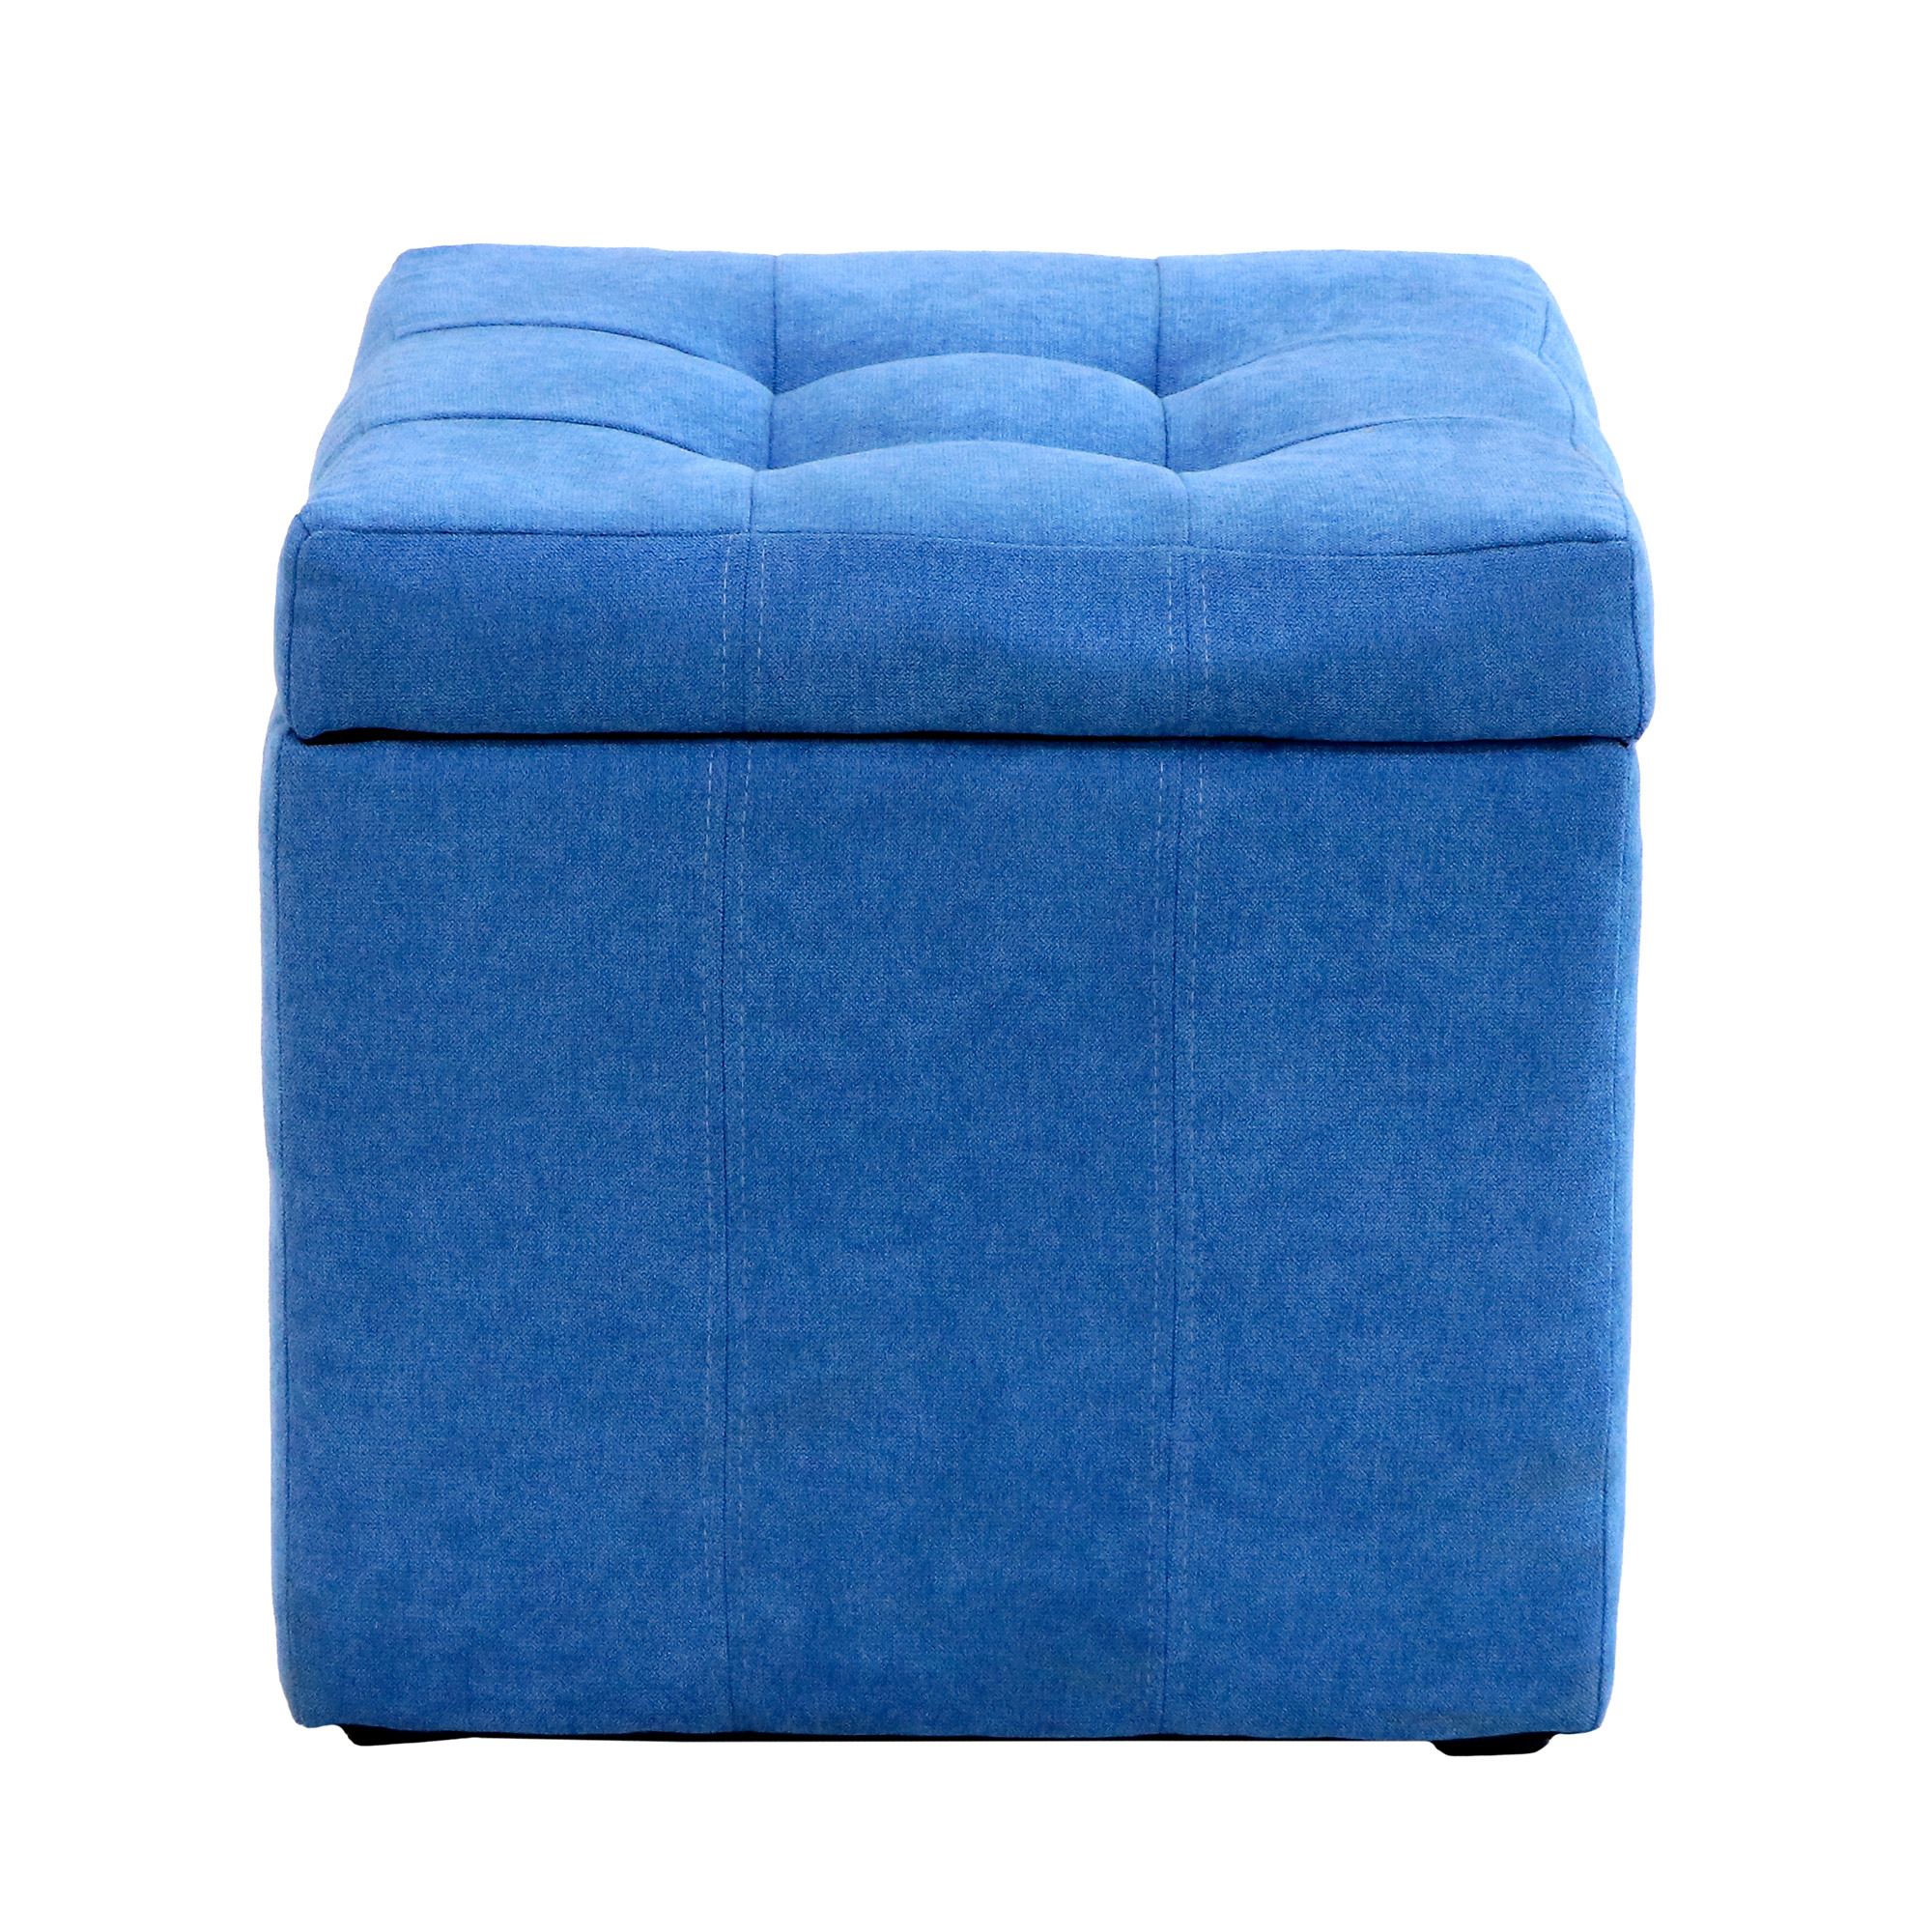 Банкетка Dreambag модерна синий велюр 46х46х46, размер 46х46х46 см - фото 2